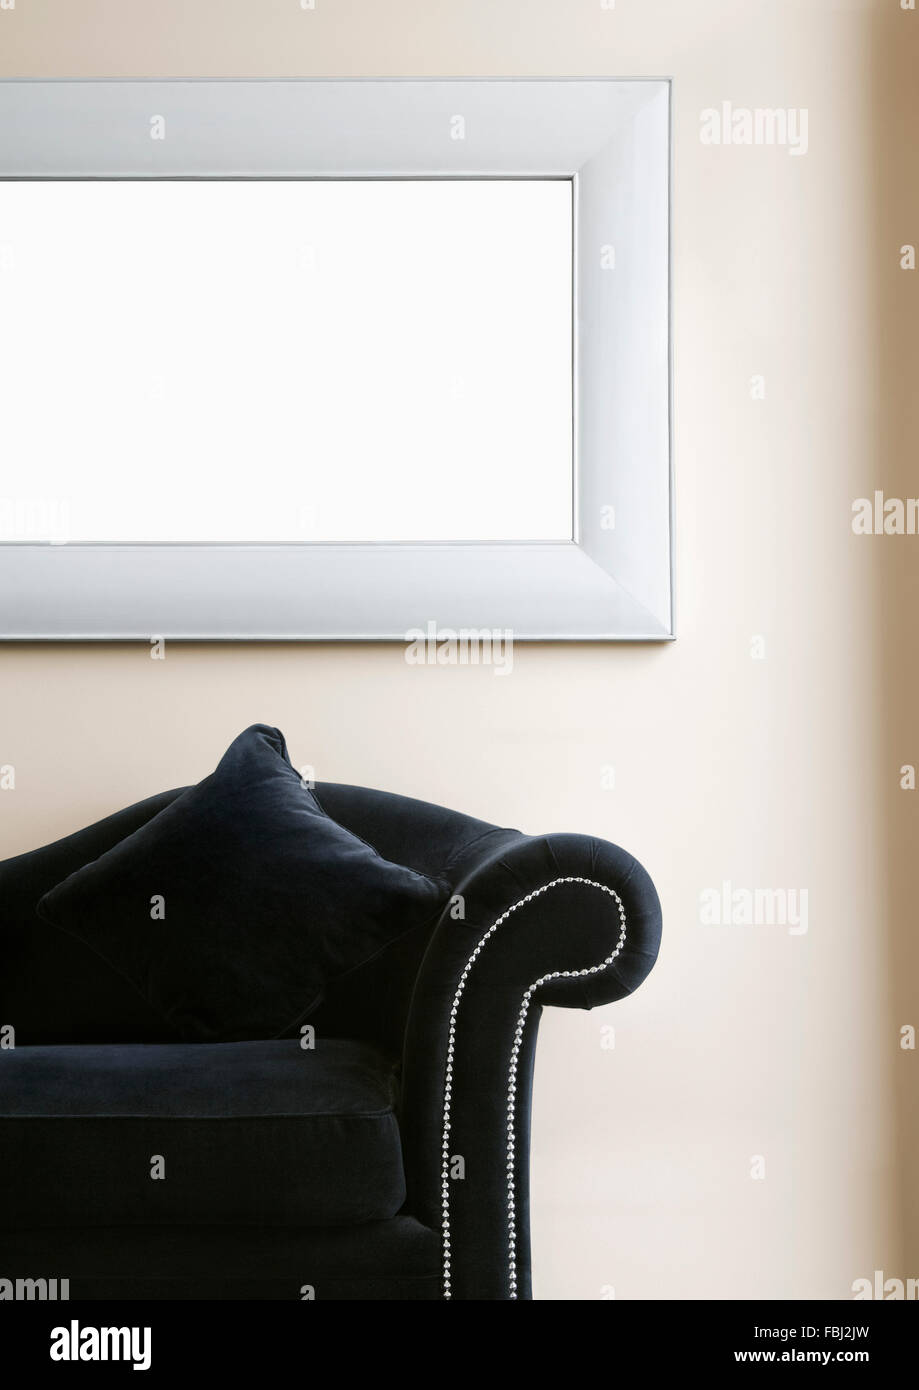 Inneren minimalistische Details. Farbe schwarz Couch und Bild Frame. Beschneidungspfad in Rahmen. Stockfoto